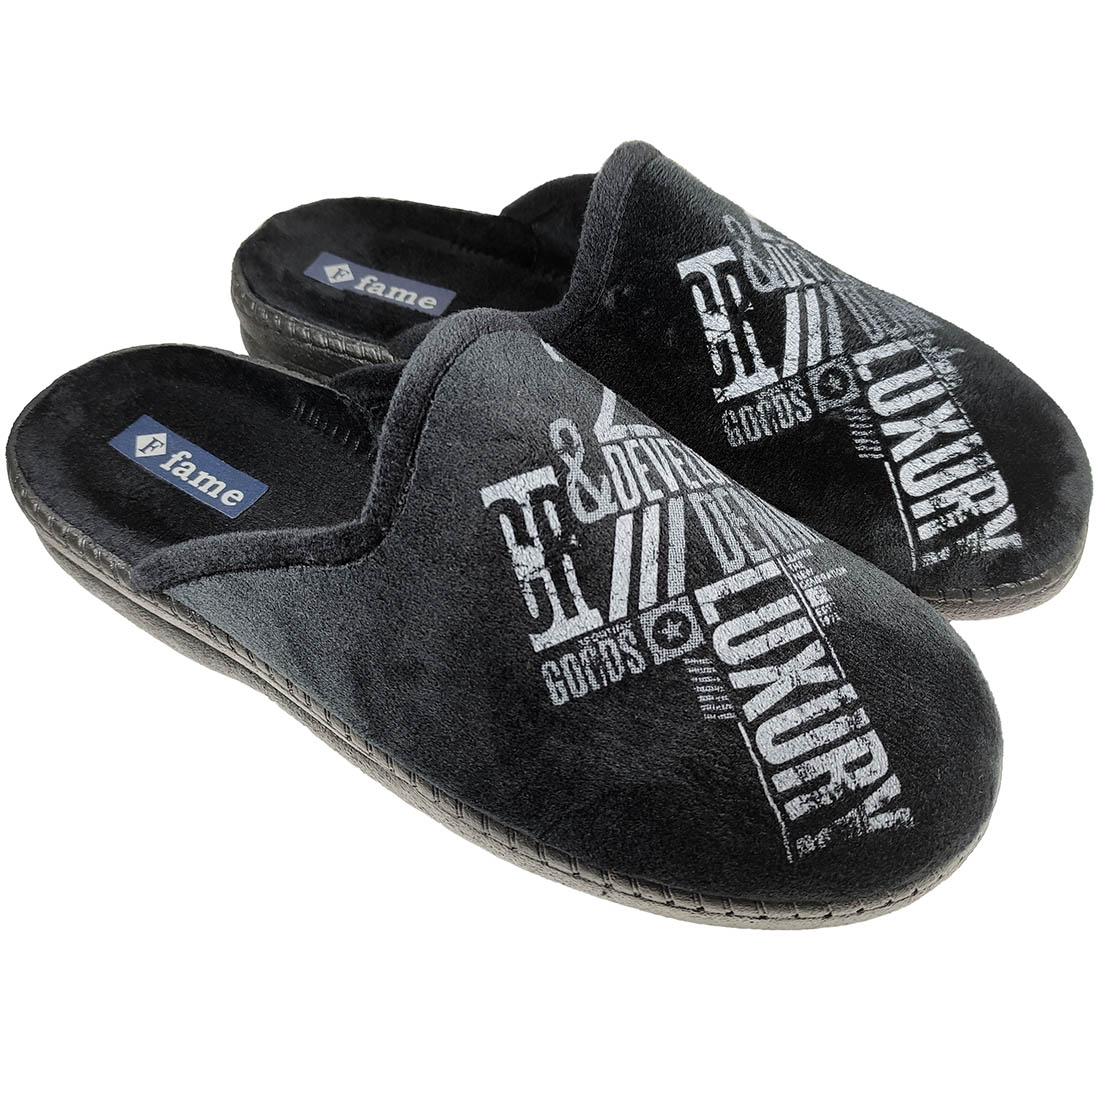 Mens Winter Slippers Fame NL1731 Black